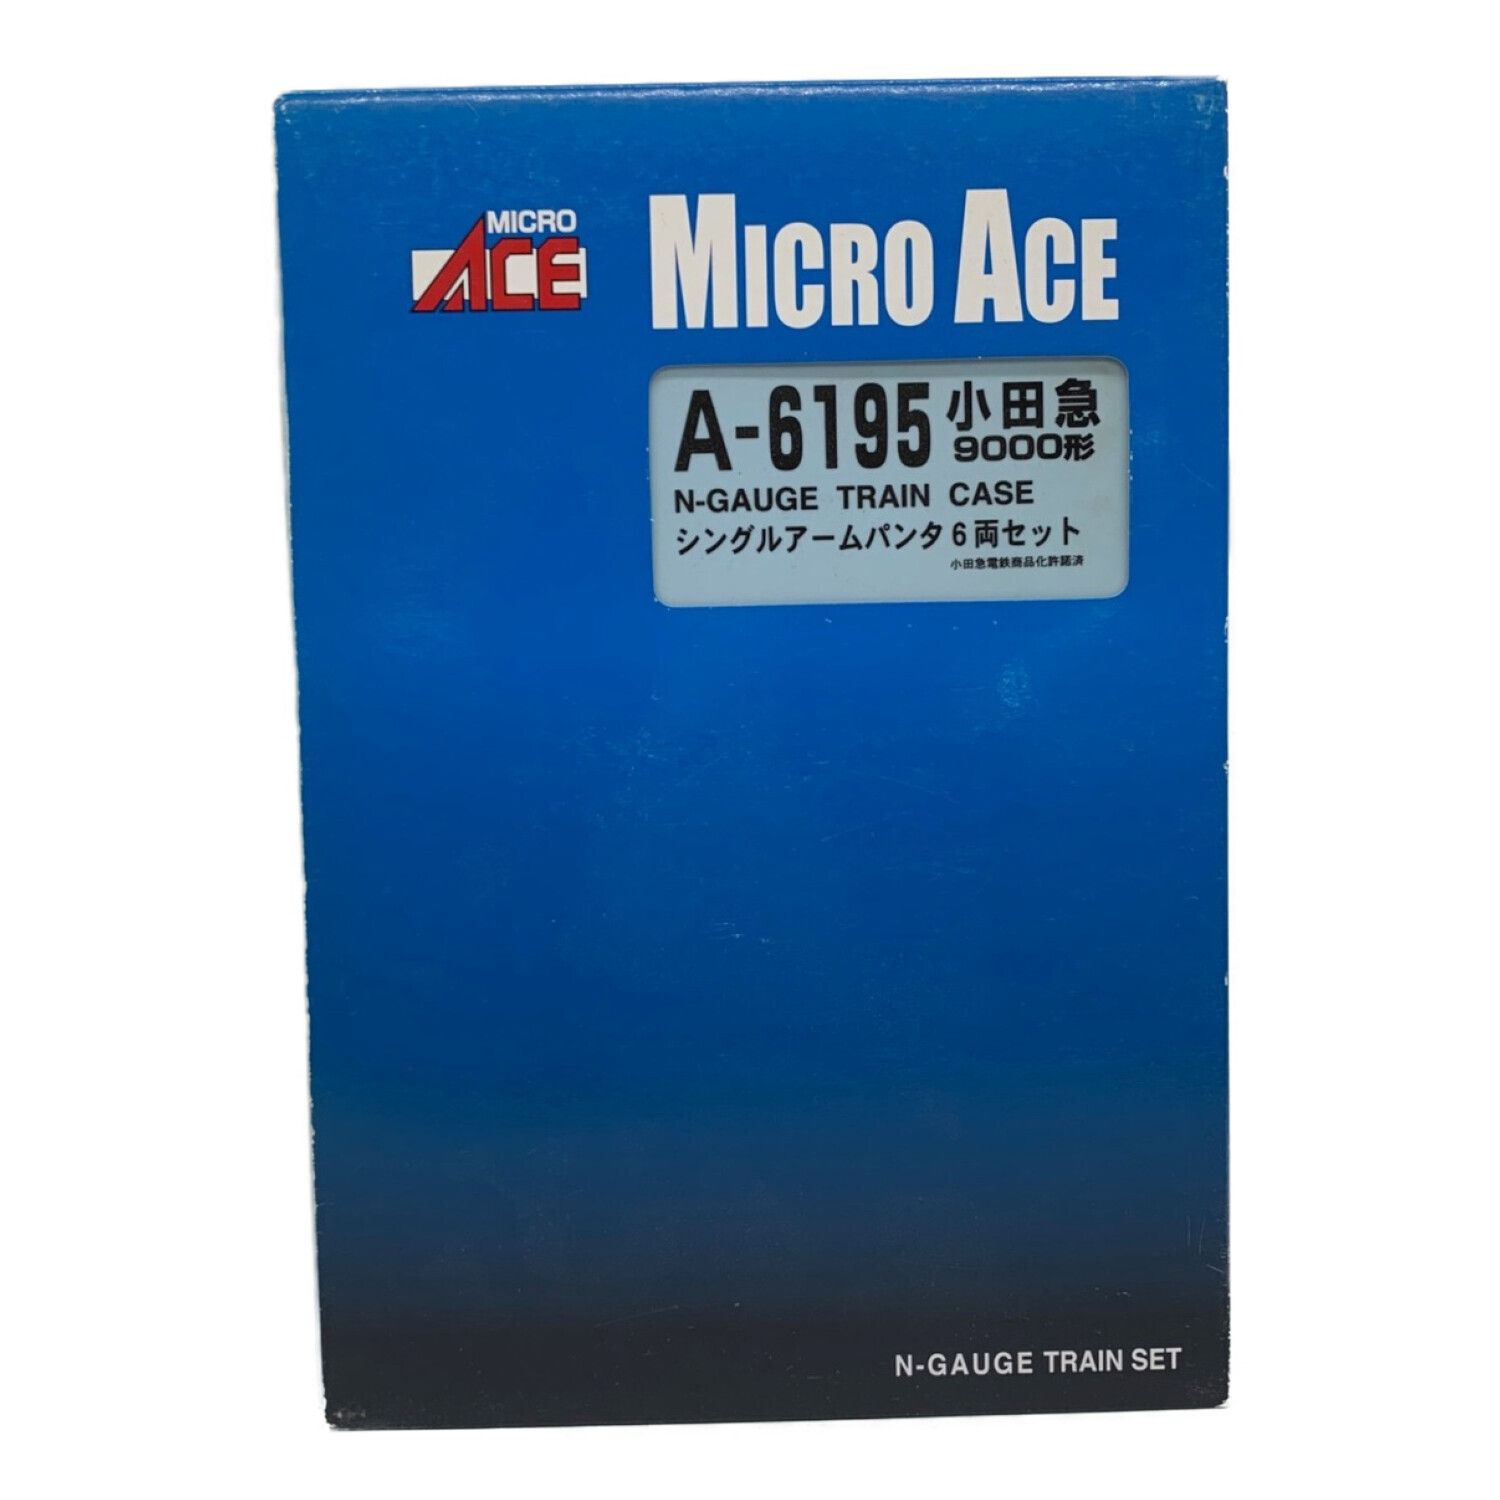 MICRO ACE (マイクロエース) Nゲージ 小田急9000形 シングルアーム